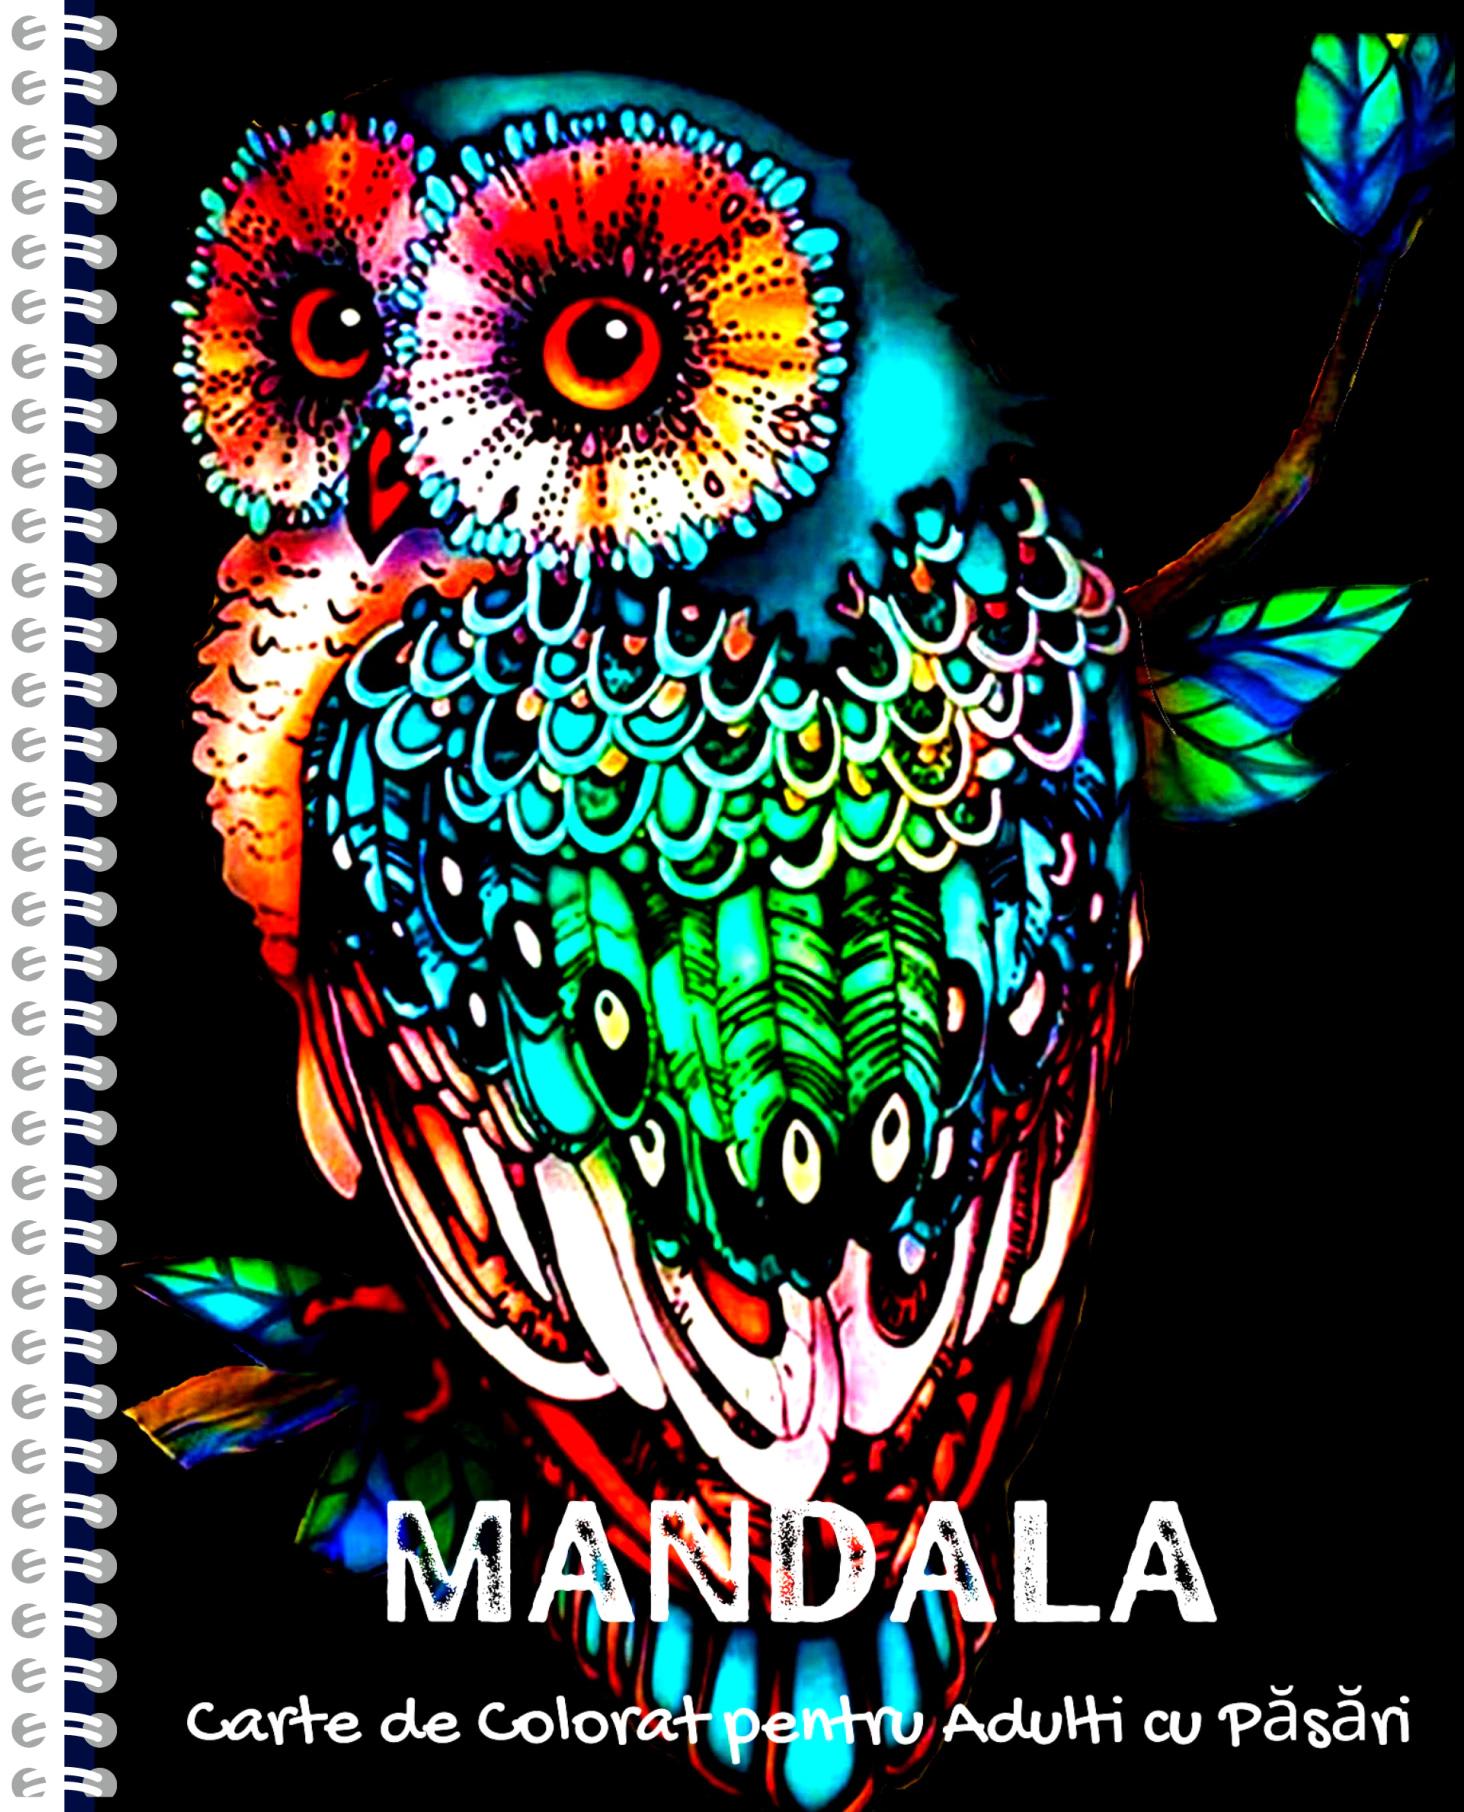 50 Mandale. Carte de colorat pentru adulti - Carte de colorat pentru adulti cu pasari